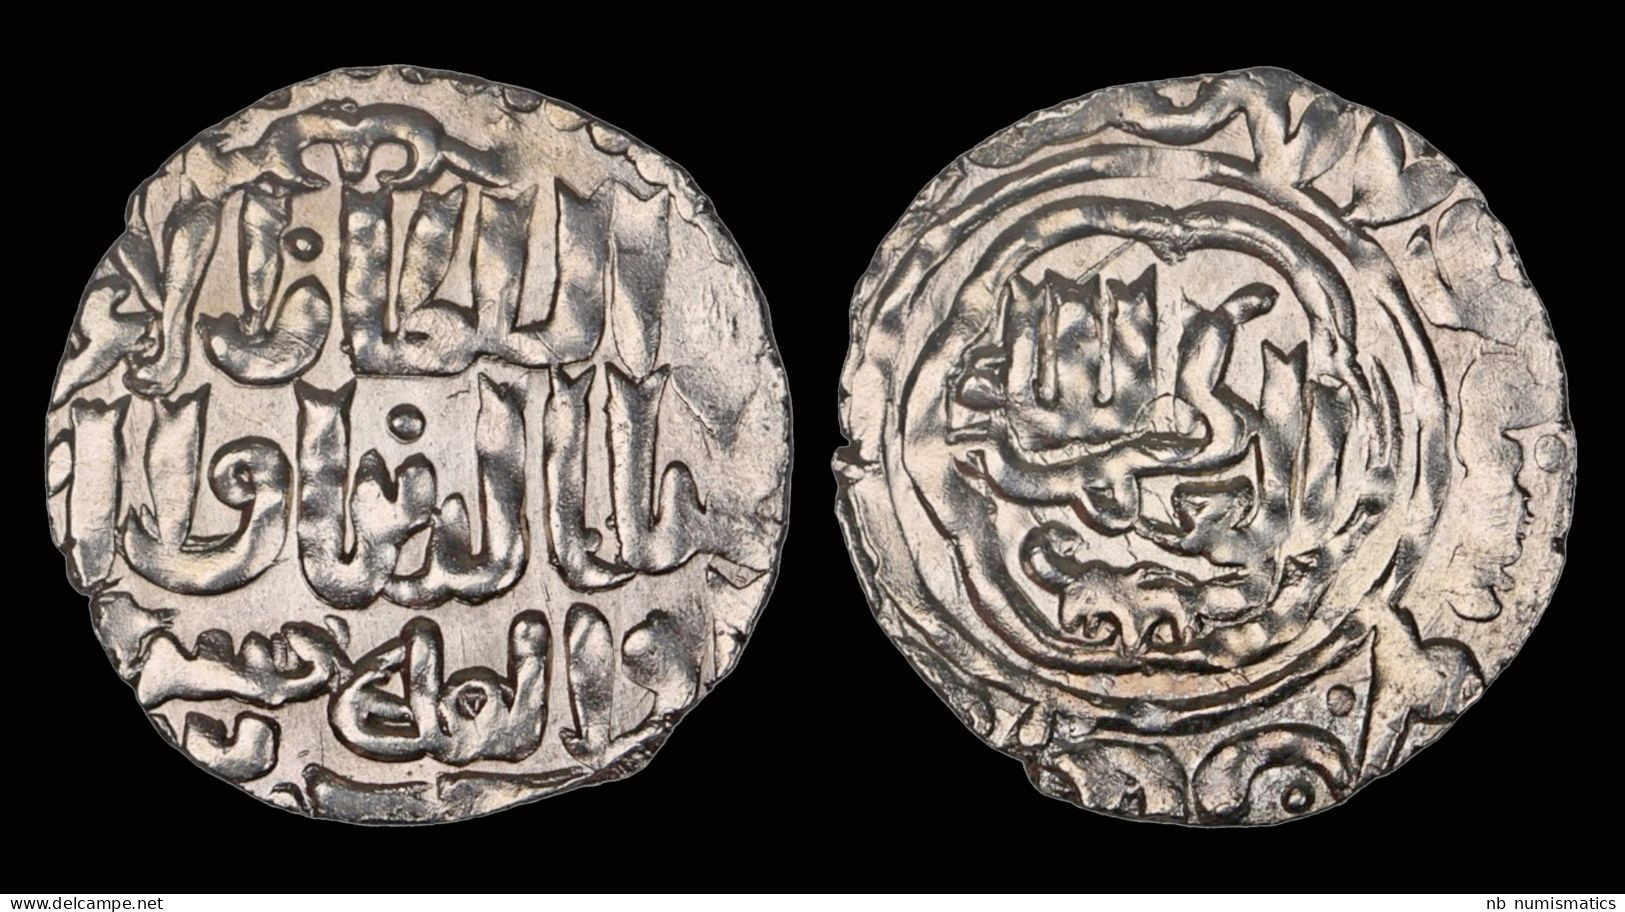 Islamic Seljuq Of Rum Ghiyath Al-Din Mas'ud II, First Reign AR Dirham - Islamitisch